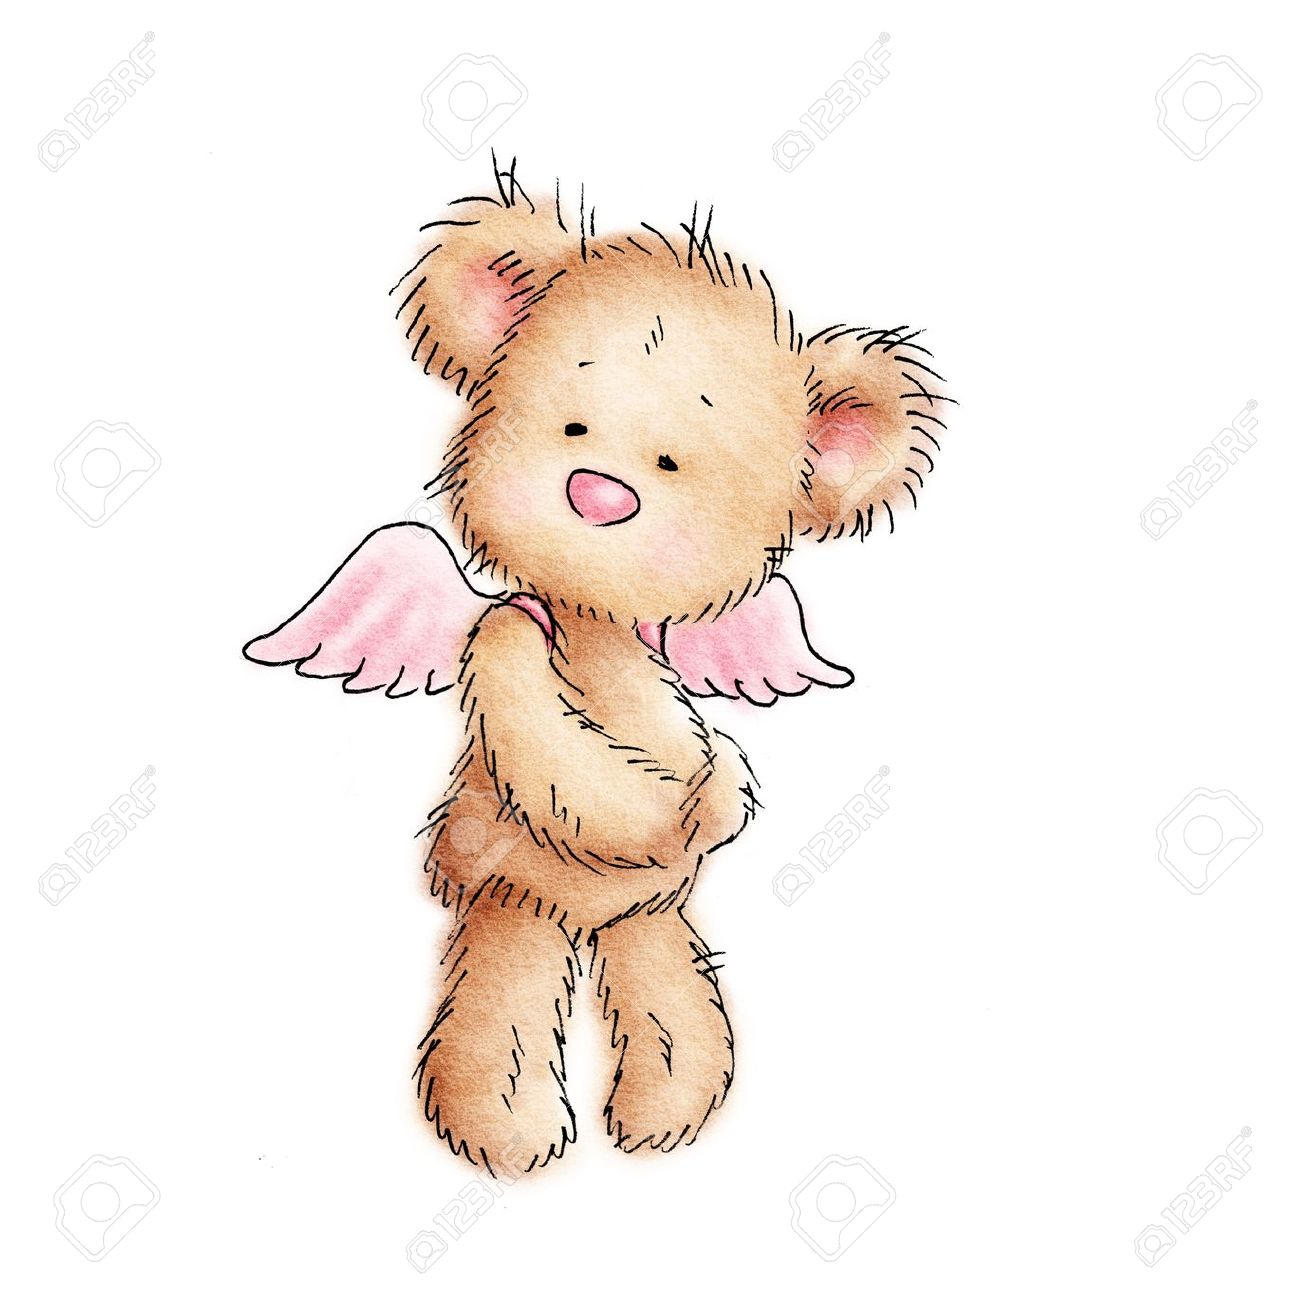 Angel teddy bear clipart